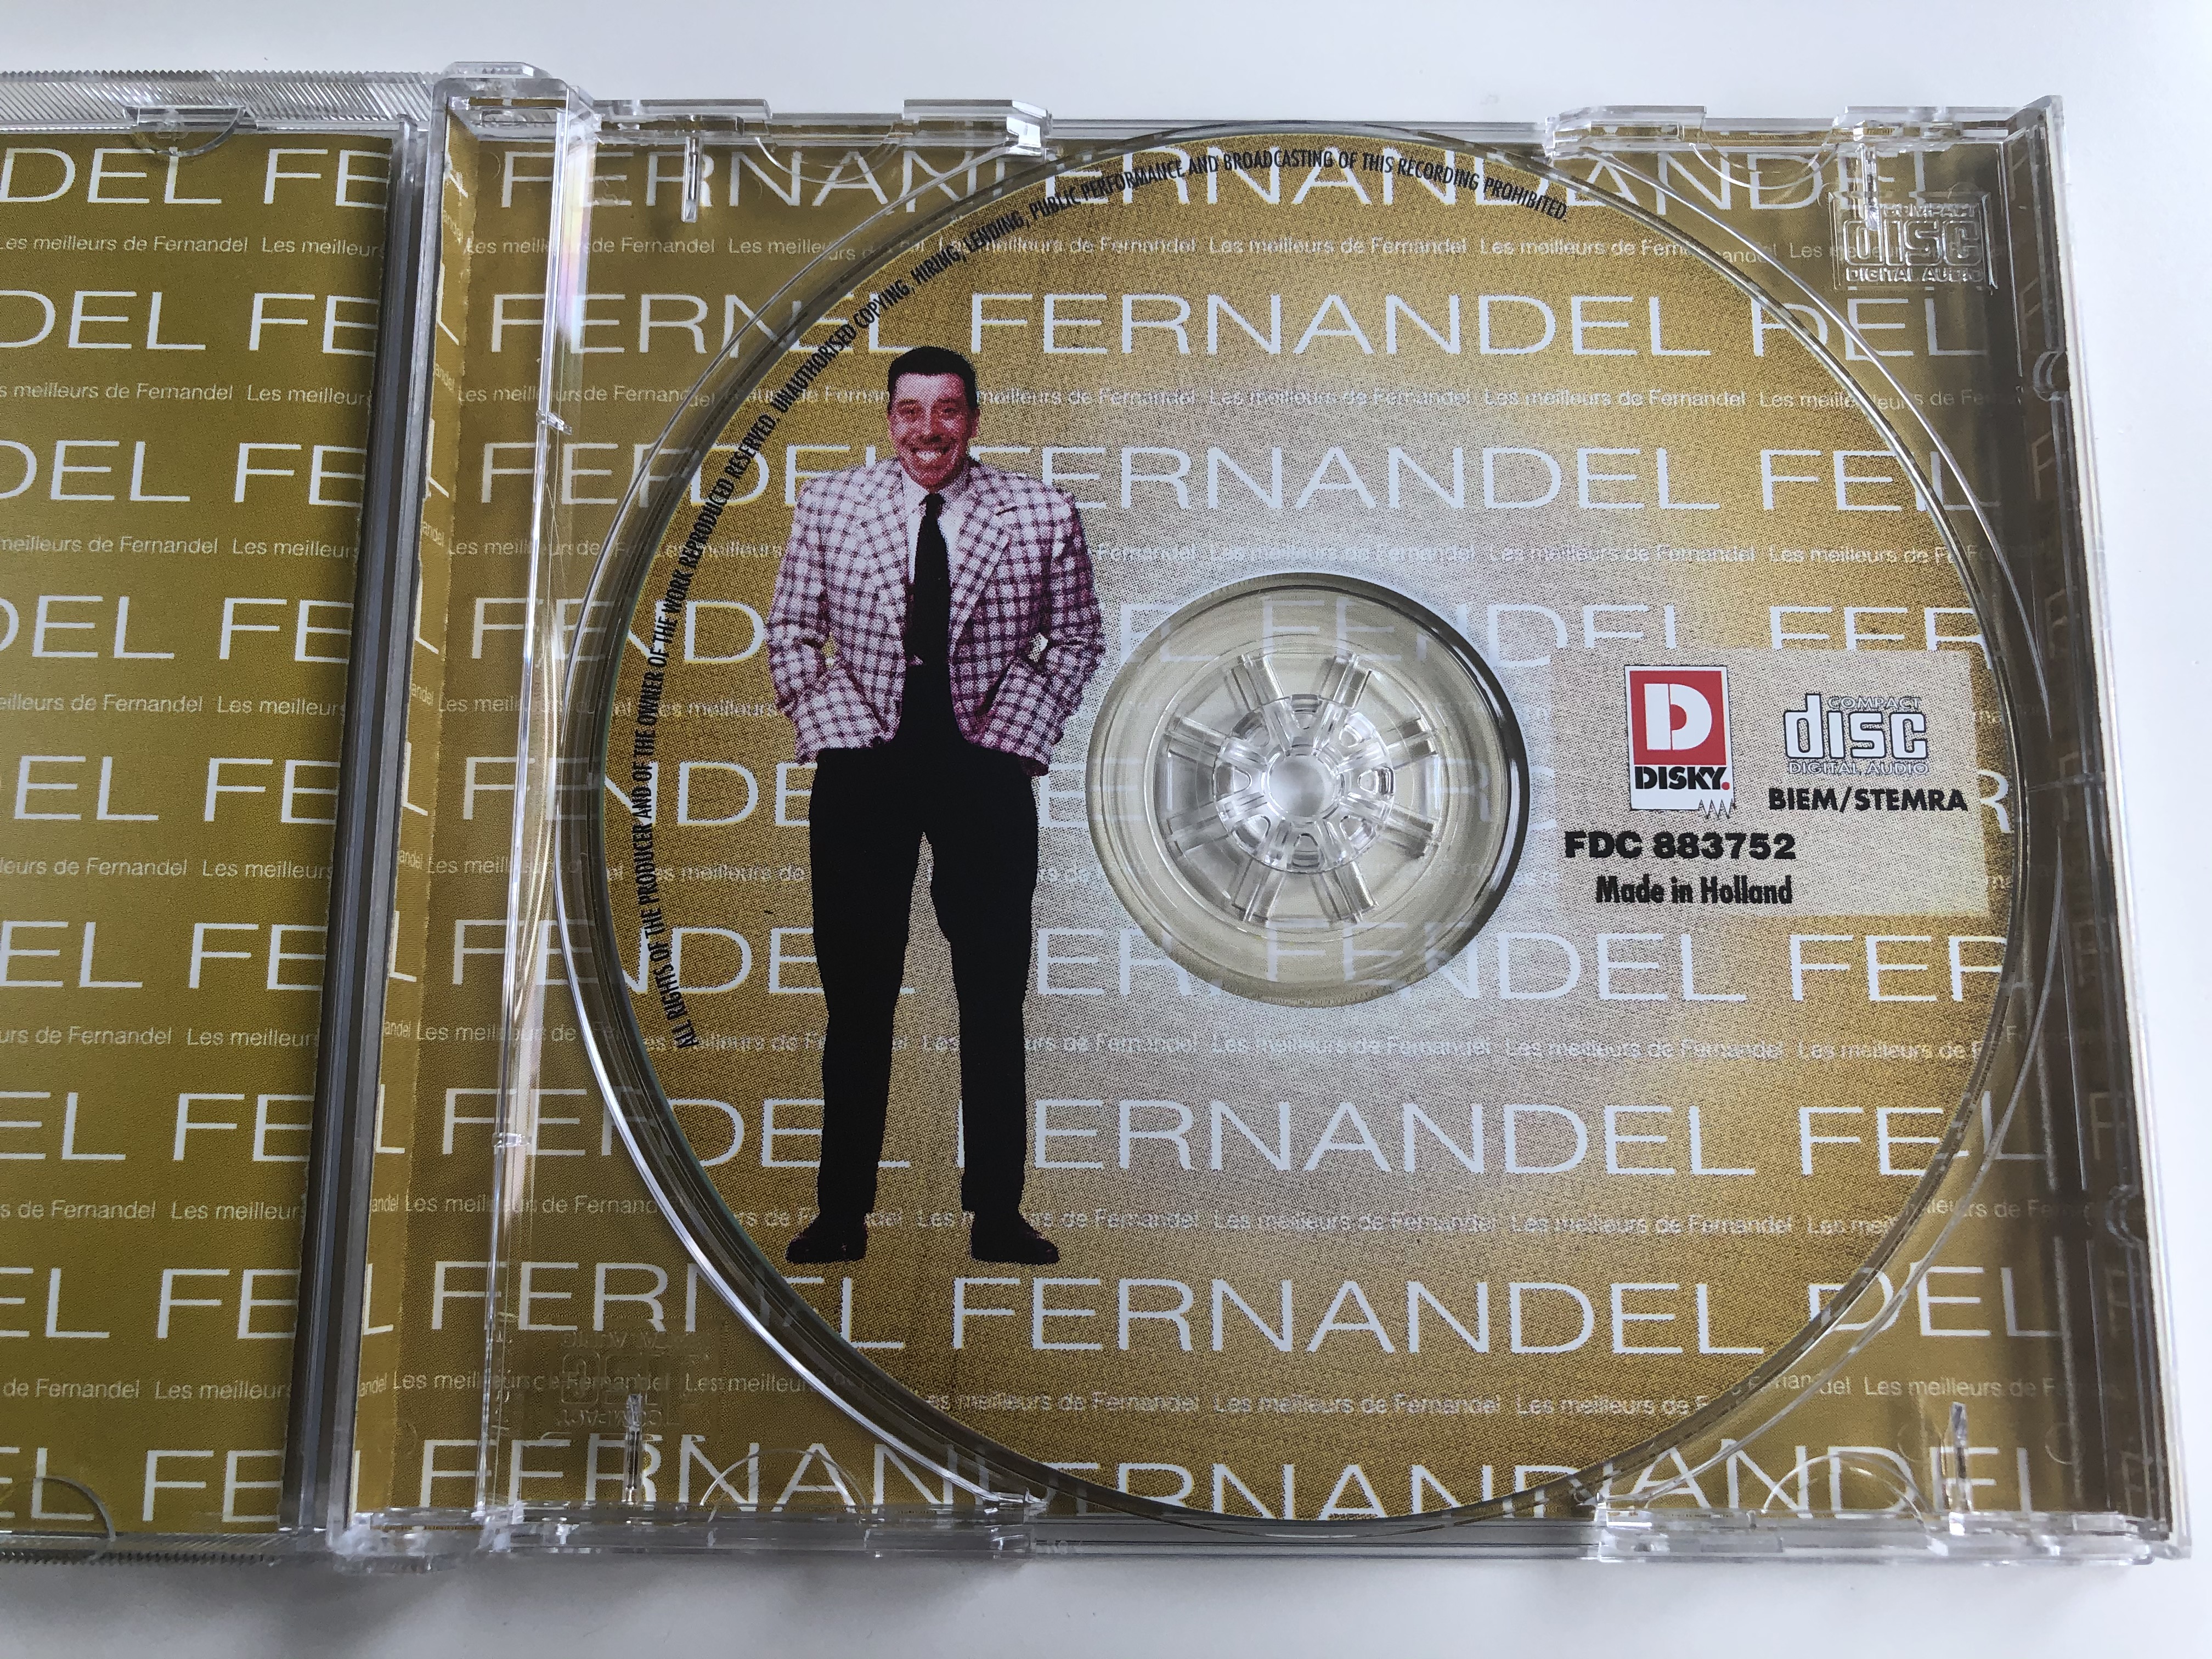 fernandel-les-meilleurs-de-fernandel-un-homme-francine-a-l-infirmerie-ignace-la-fille-du-teinturier-on-n-est-jamais-seul-disky-audio-cd-1998-fdc-88375222-4-.jpg